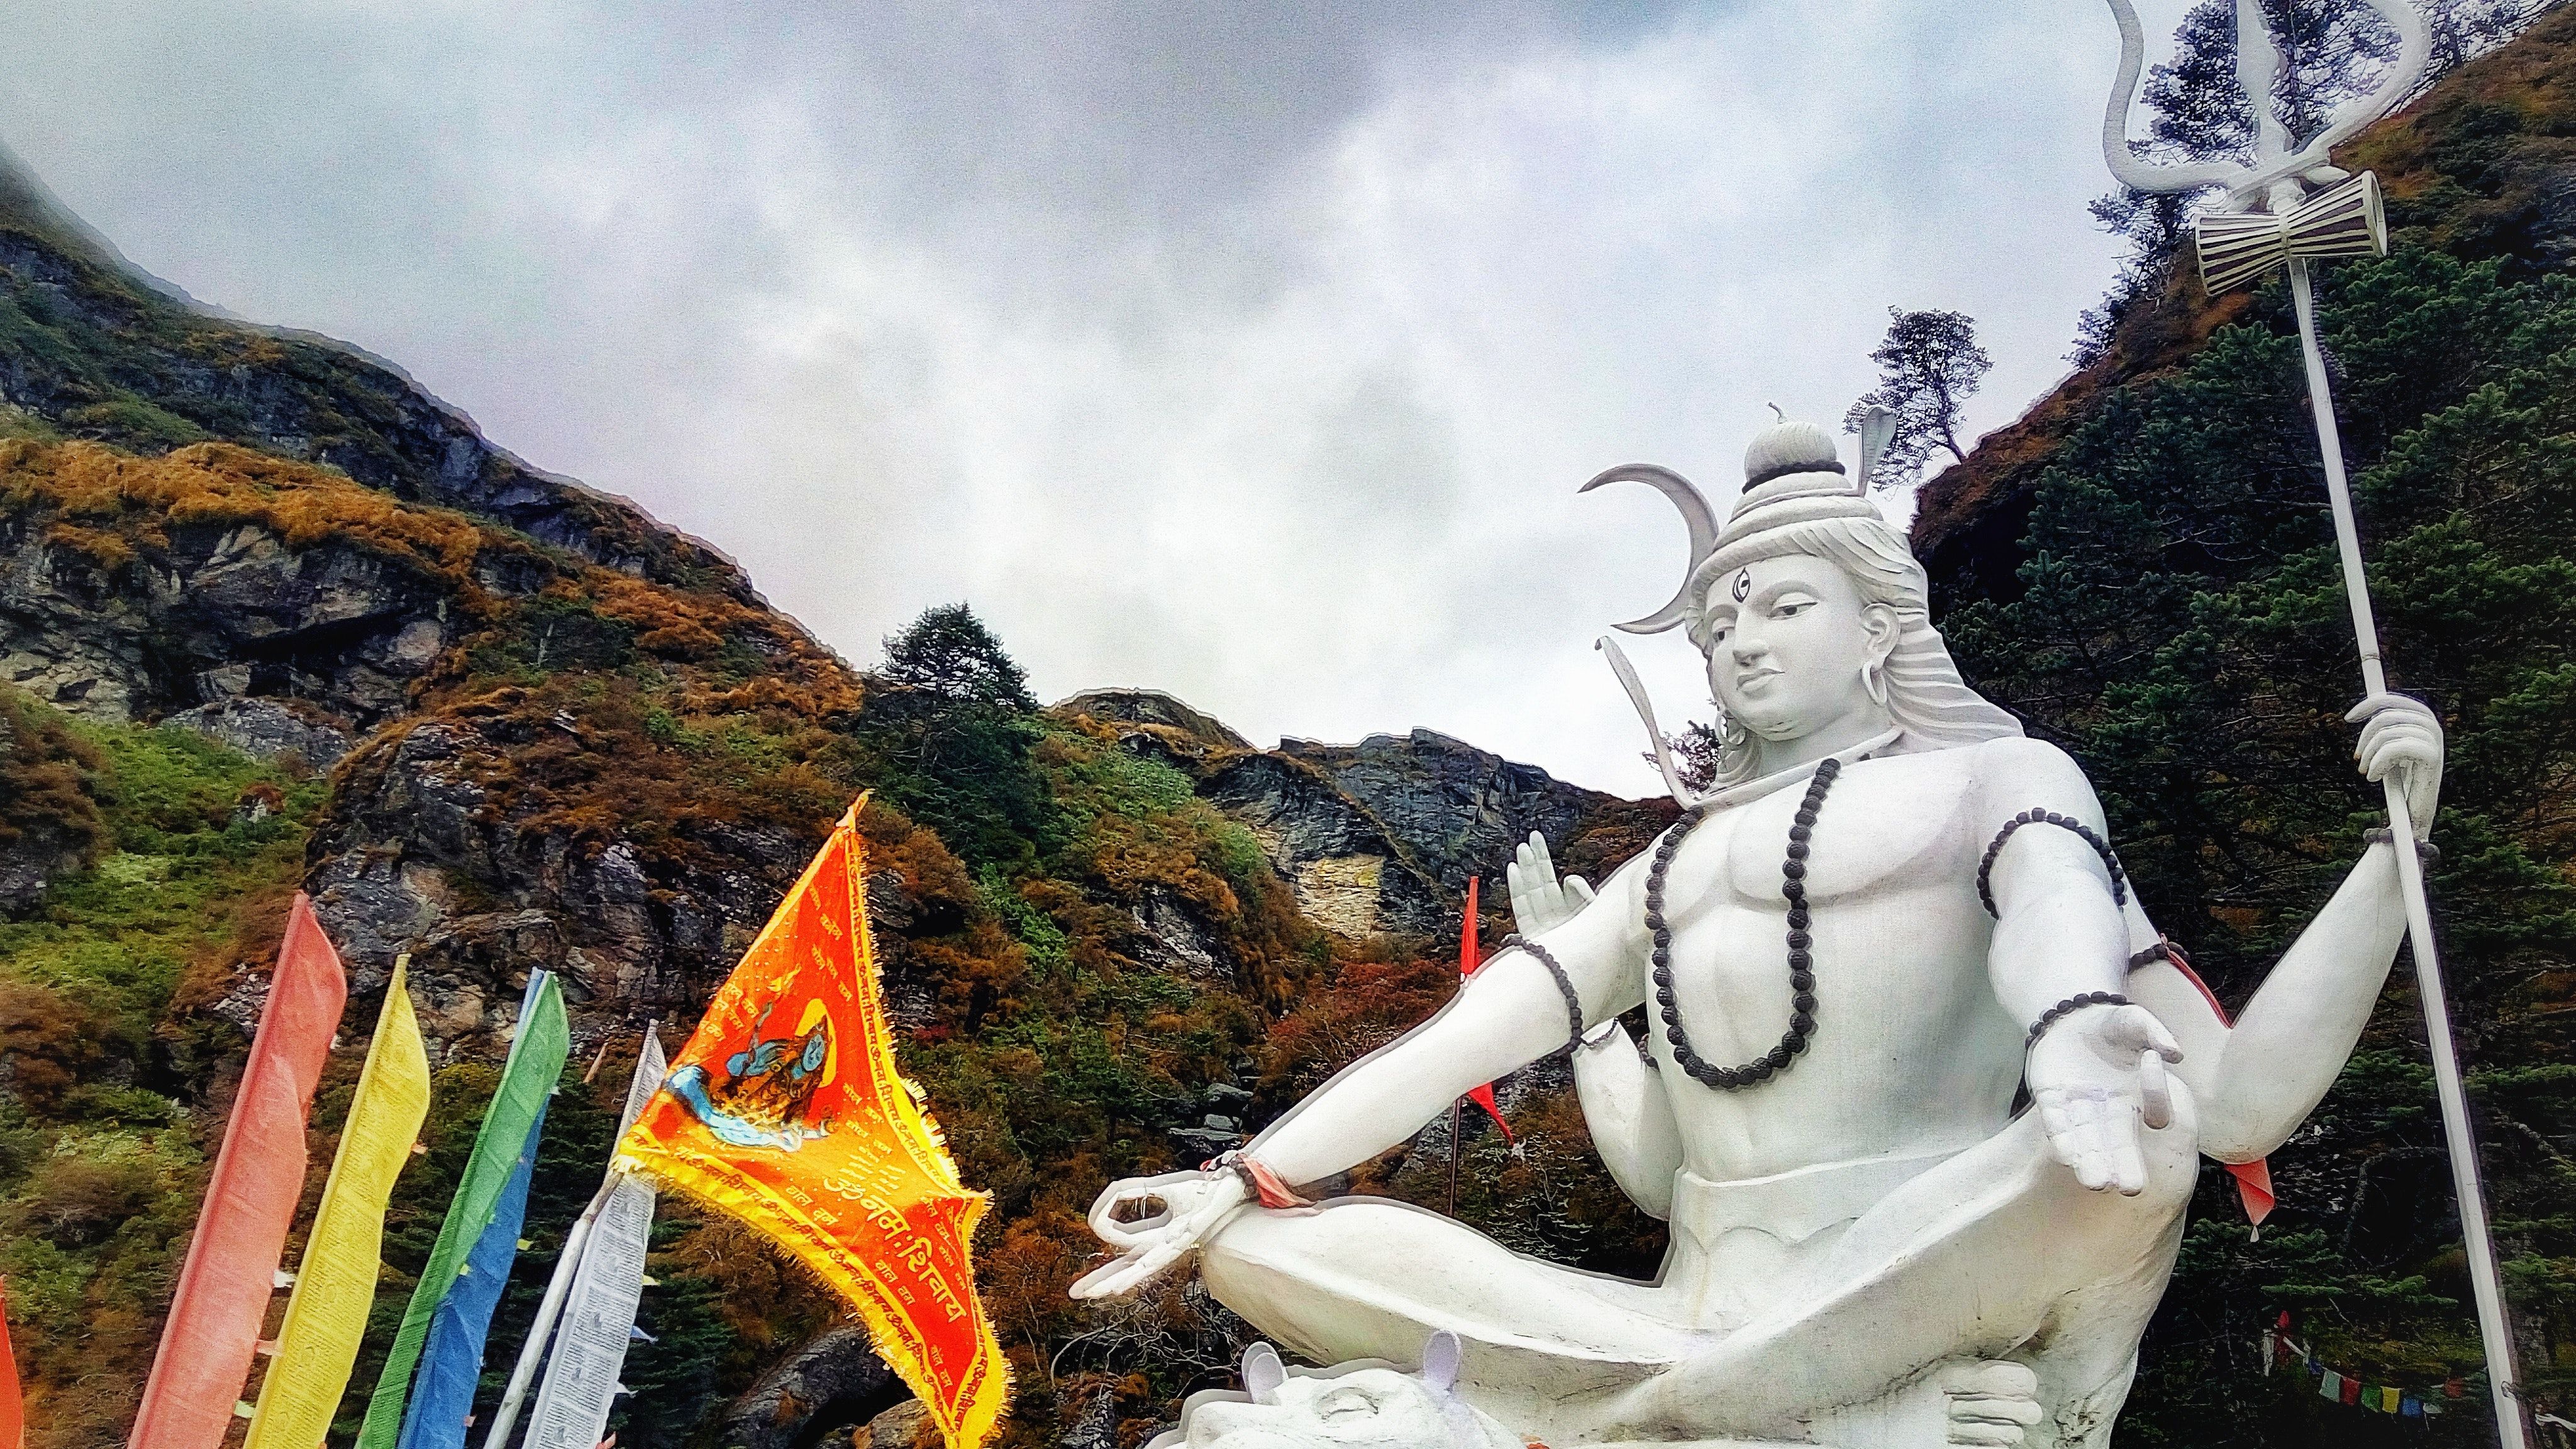 Free of #OmNamahShivya #sikkim ft. #travel